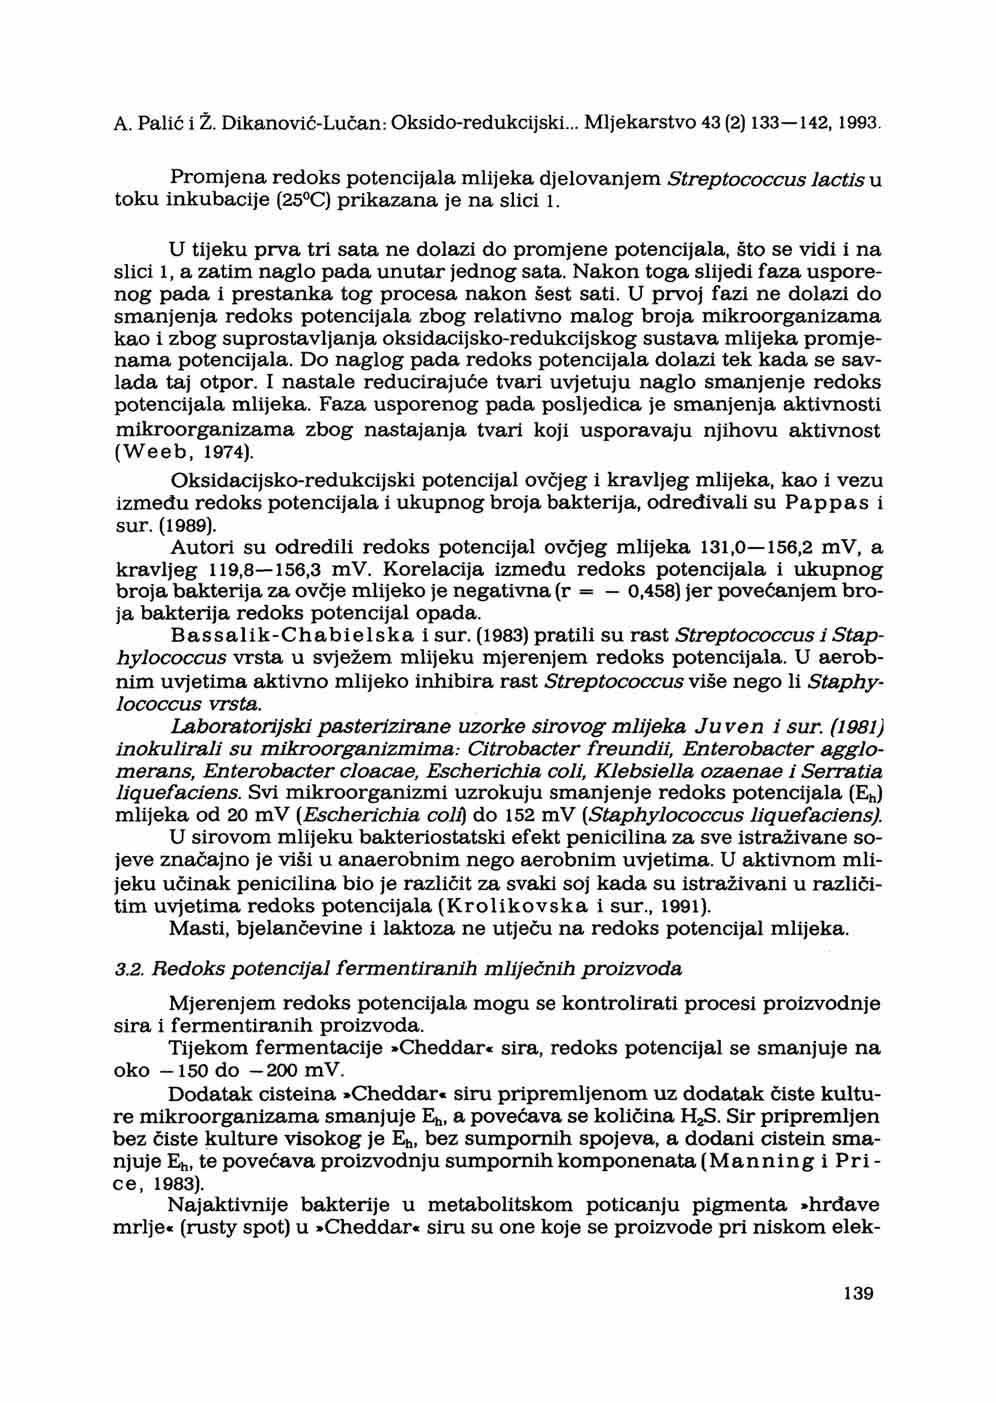 A. Palić i Ž. Dikanović-Lučan: Oksido-redukcijski... Mljekarstvo 43 (2) 133 142,1993. Promjena redoks potencijala mlijeka djelovanjem Streptococcus toku inkubacije (25 C) prikazana je na slici 1.